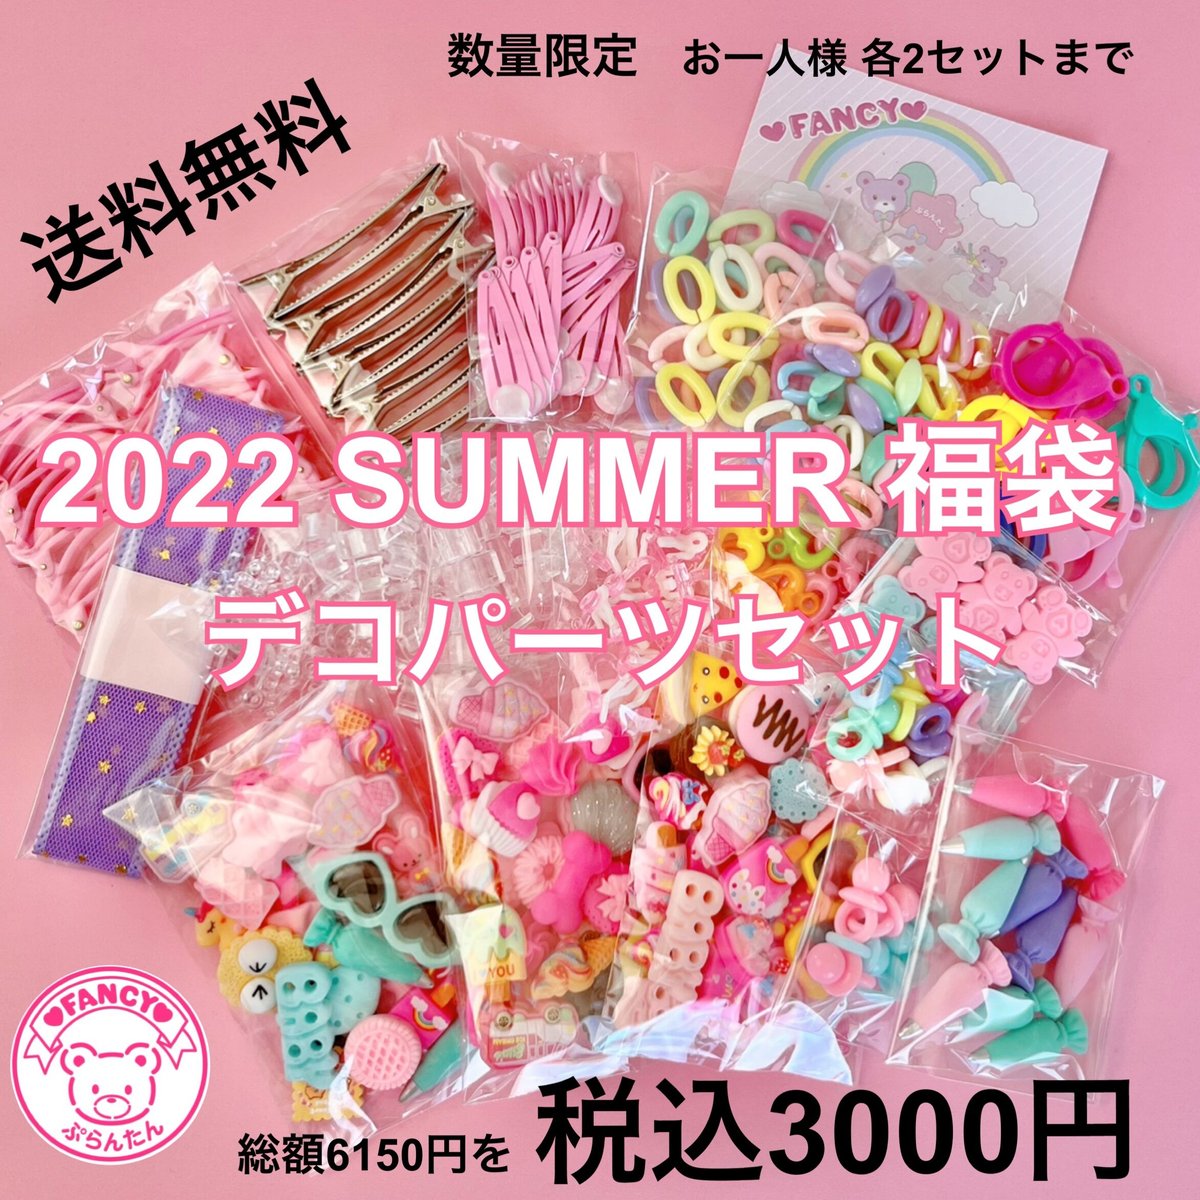 2022 SUMMER 福袋 デコパーツ ☆ ハンドメイドパーツ ハンドメイド